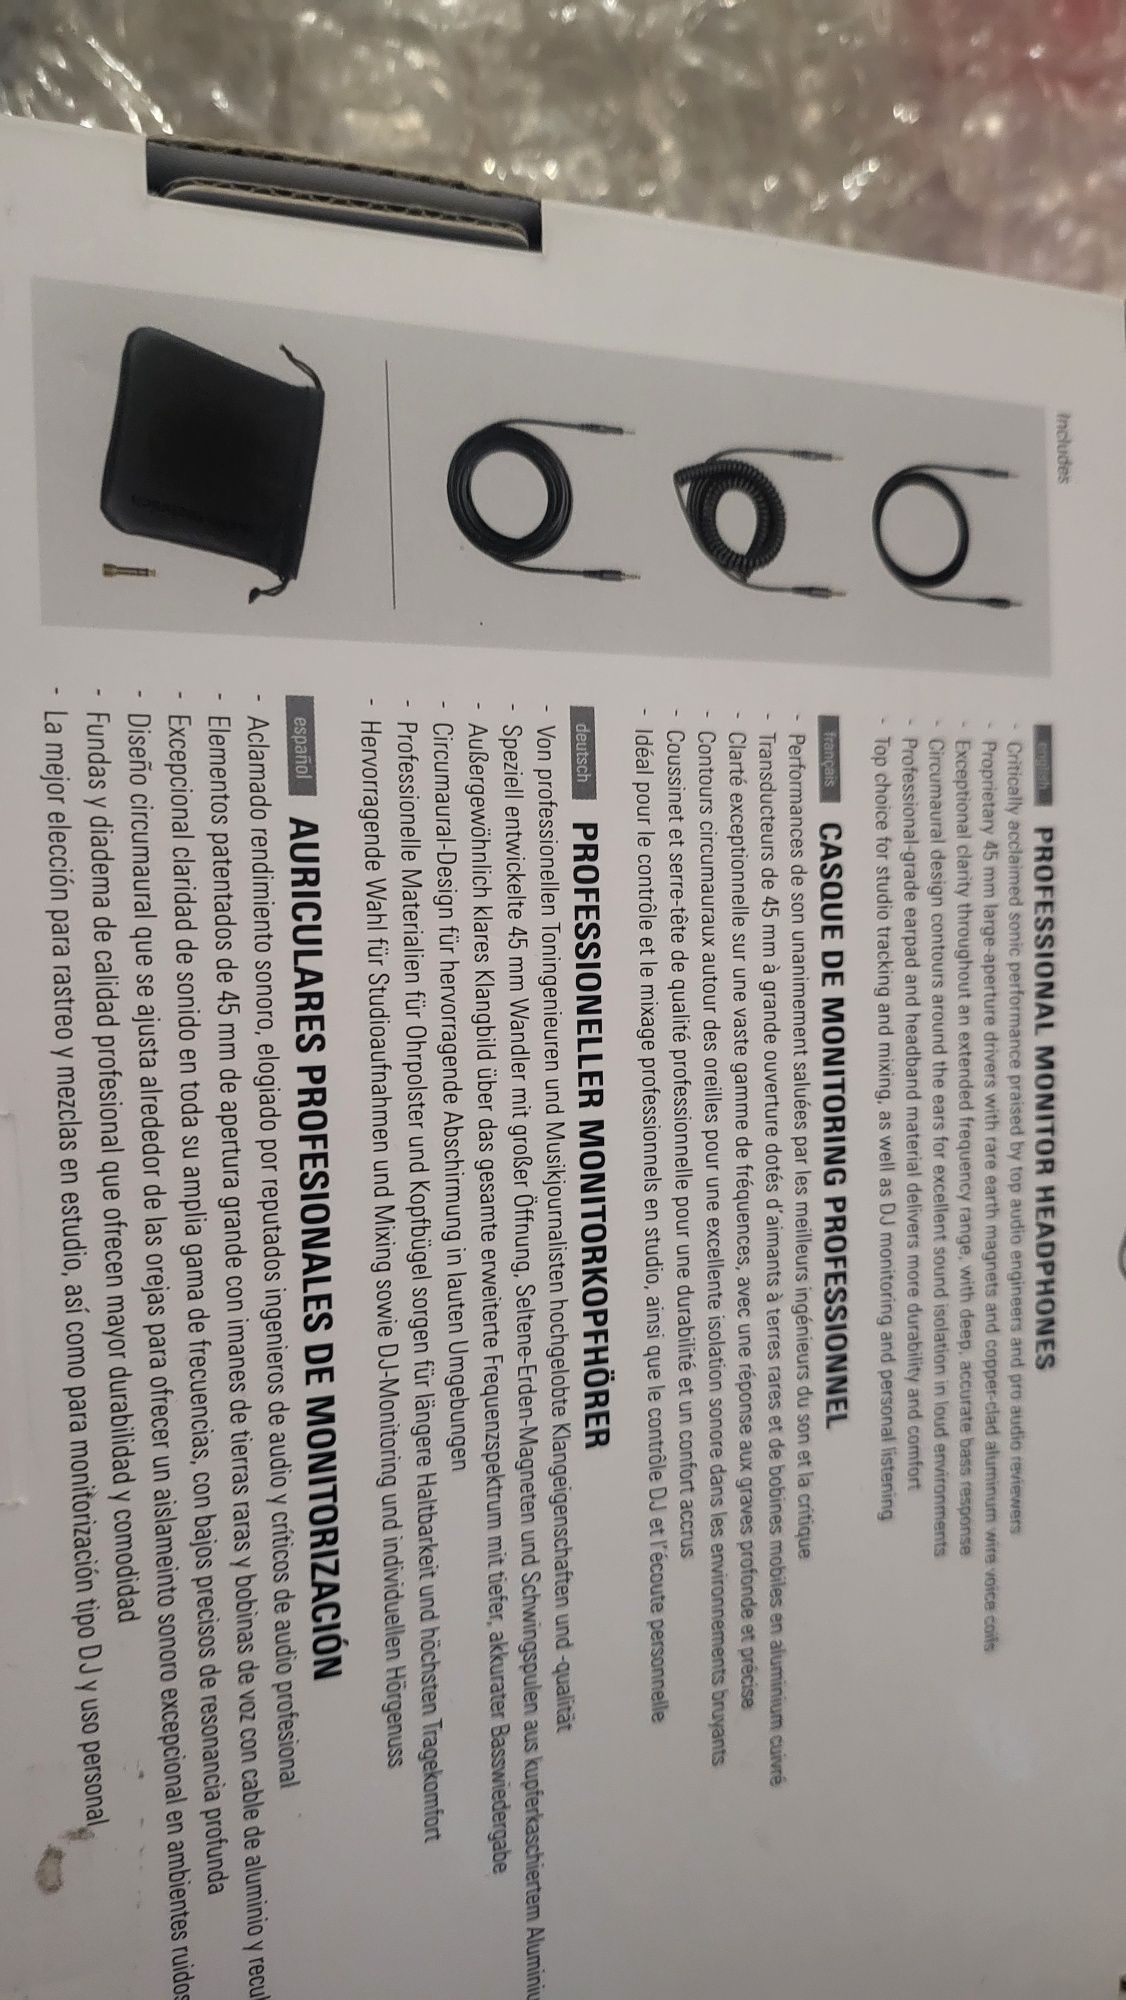 Нови Професионални Студиини слушалки Audio-Technica - ATH-M50X, черни